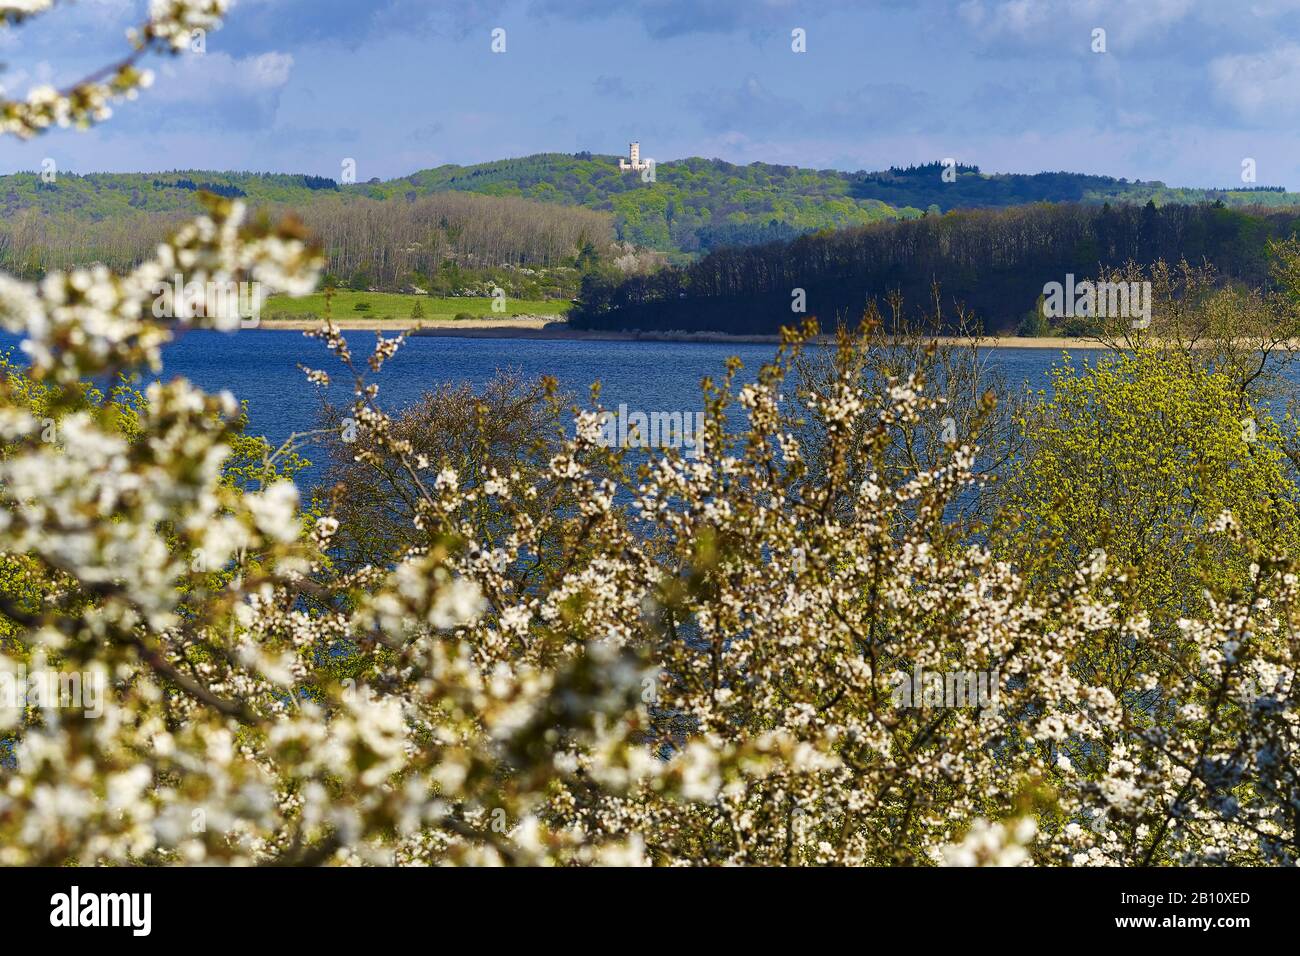 Vista desde el paraíso natural Alt Reddevitz al castillo Granitz, Ruegen, Mecklemburgo-Pernania Occidental, Alemania Foto de stock